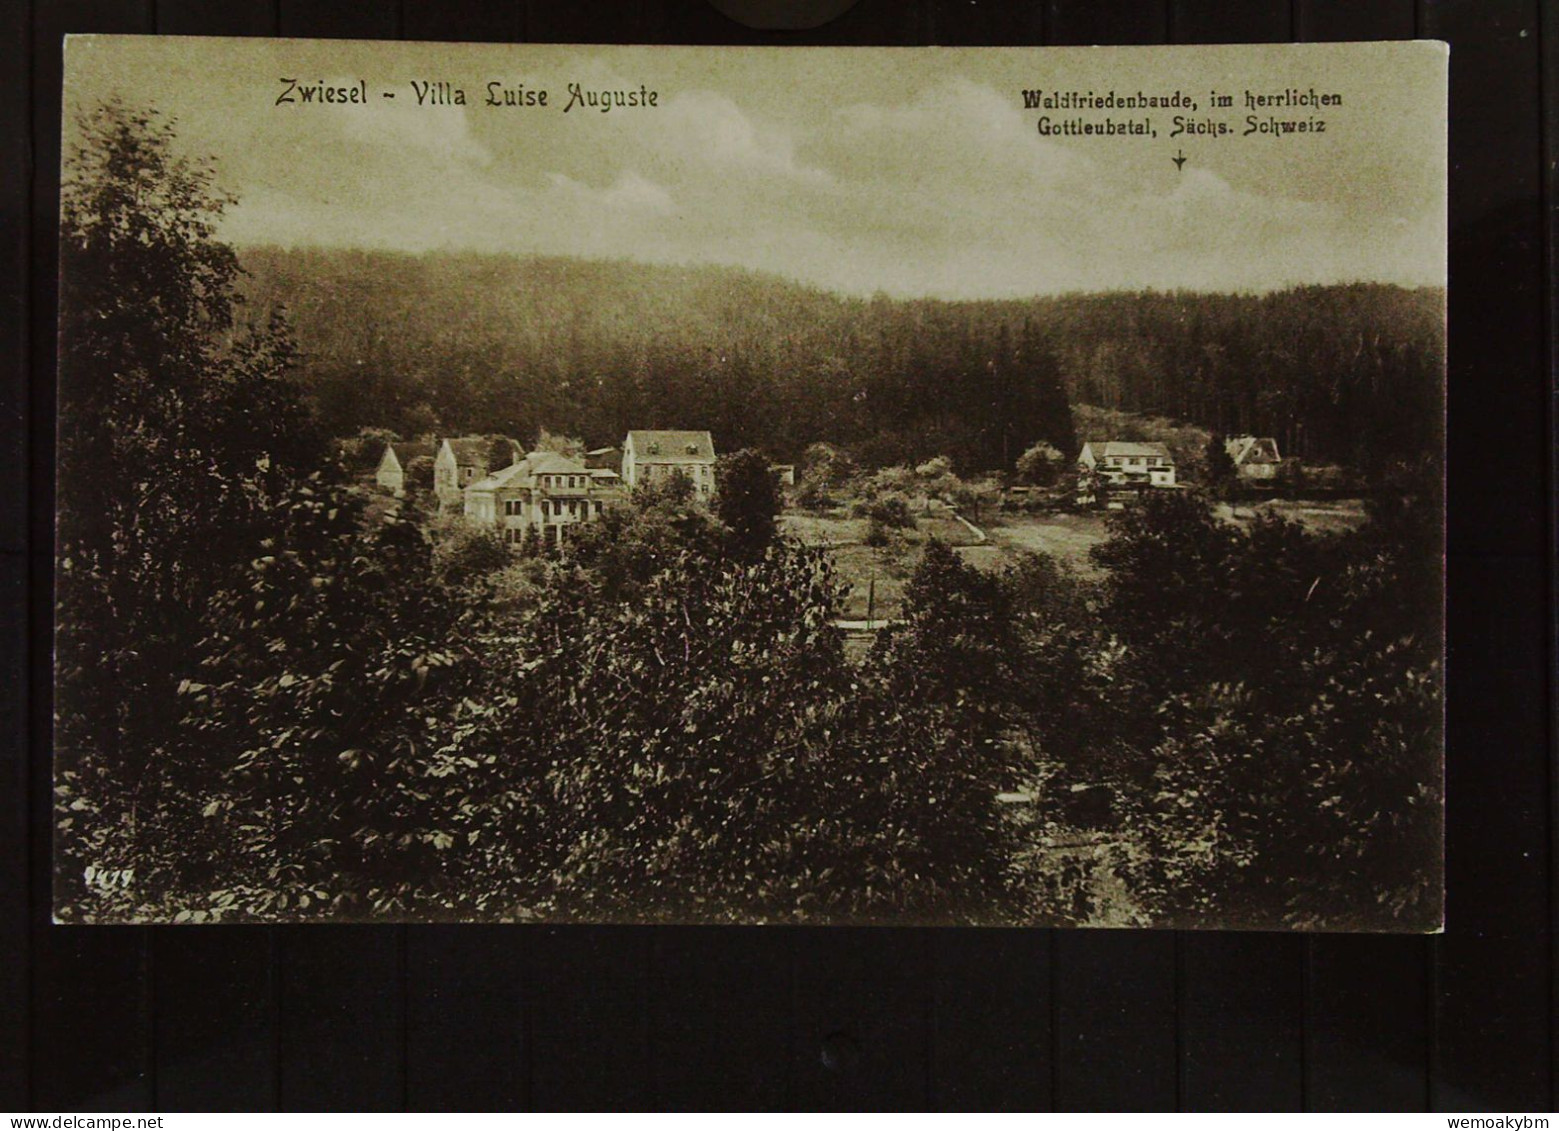 AK Von Zwiesel (Sachsen) Mit Villa "Luise Auguste"  Waldfiedensbaude, Im Herrlichen Gottleubatal -nicht Gelaufen Um 1930 - Bad Gottleuba-Berggiesshübel